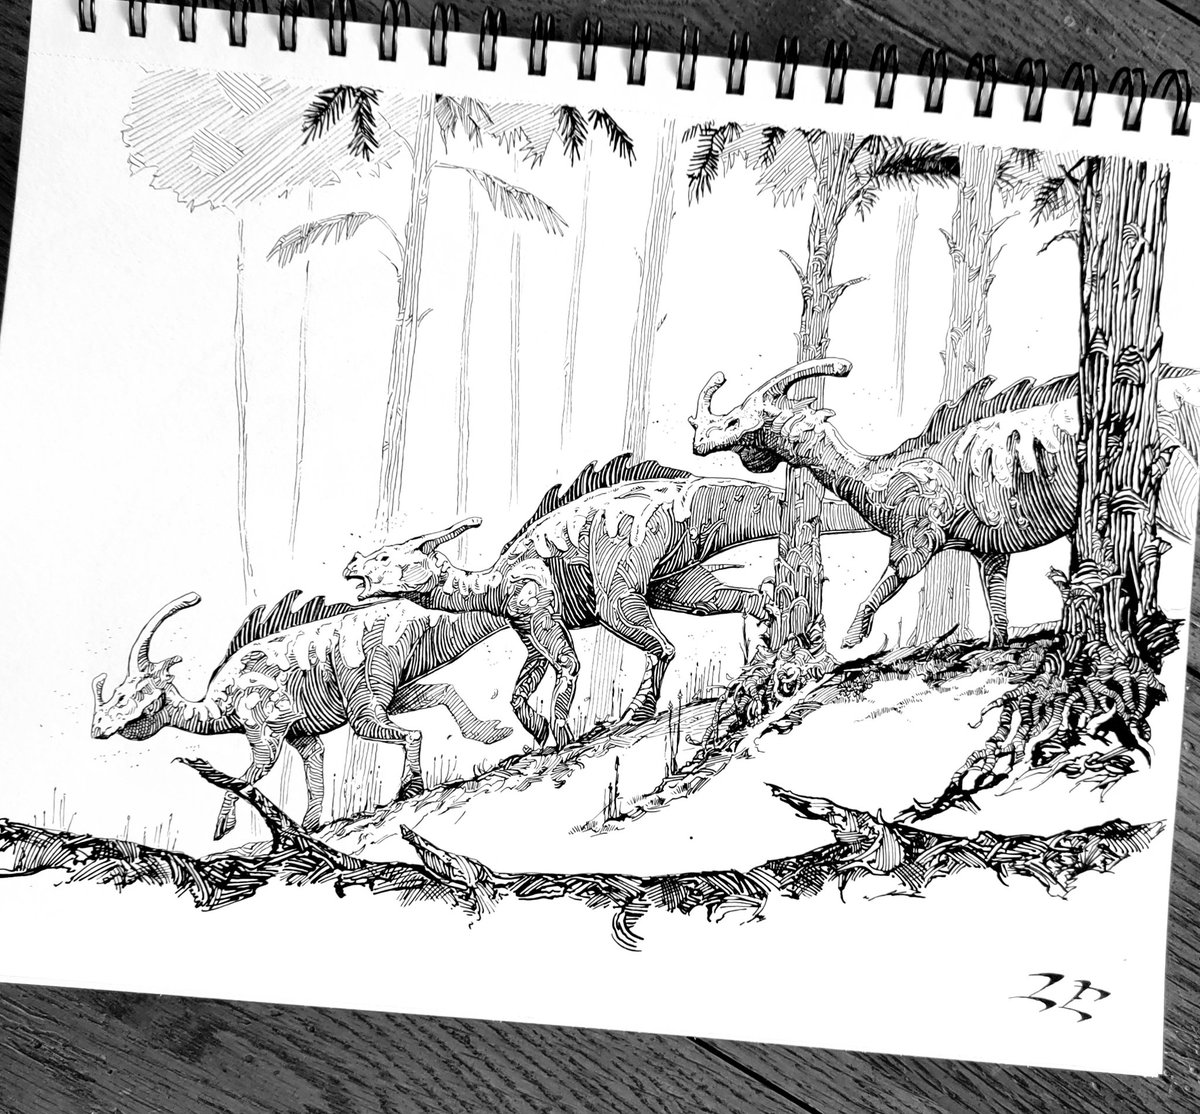 A dino #sketch for today.
#illustrator #myart #penandinkart
#ink #dinosaur